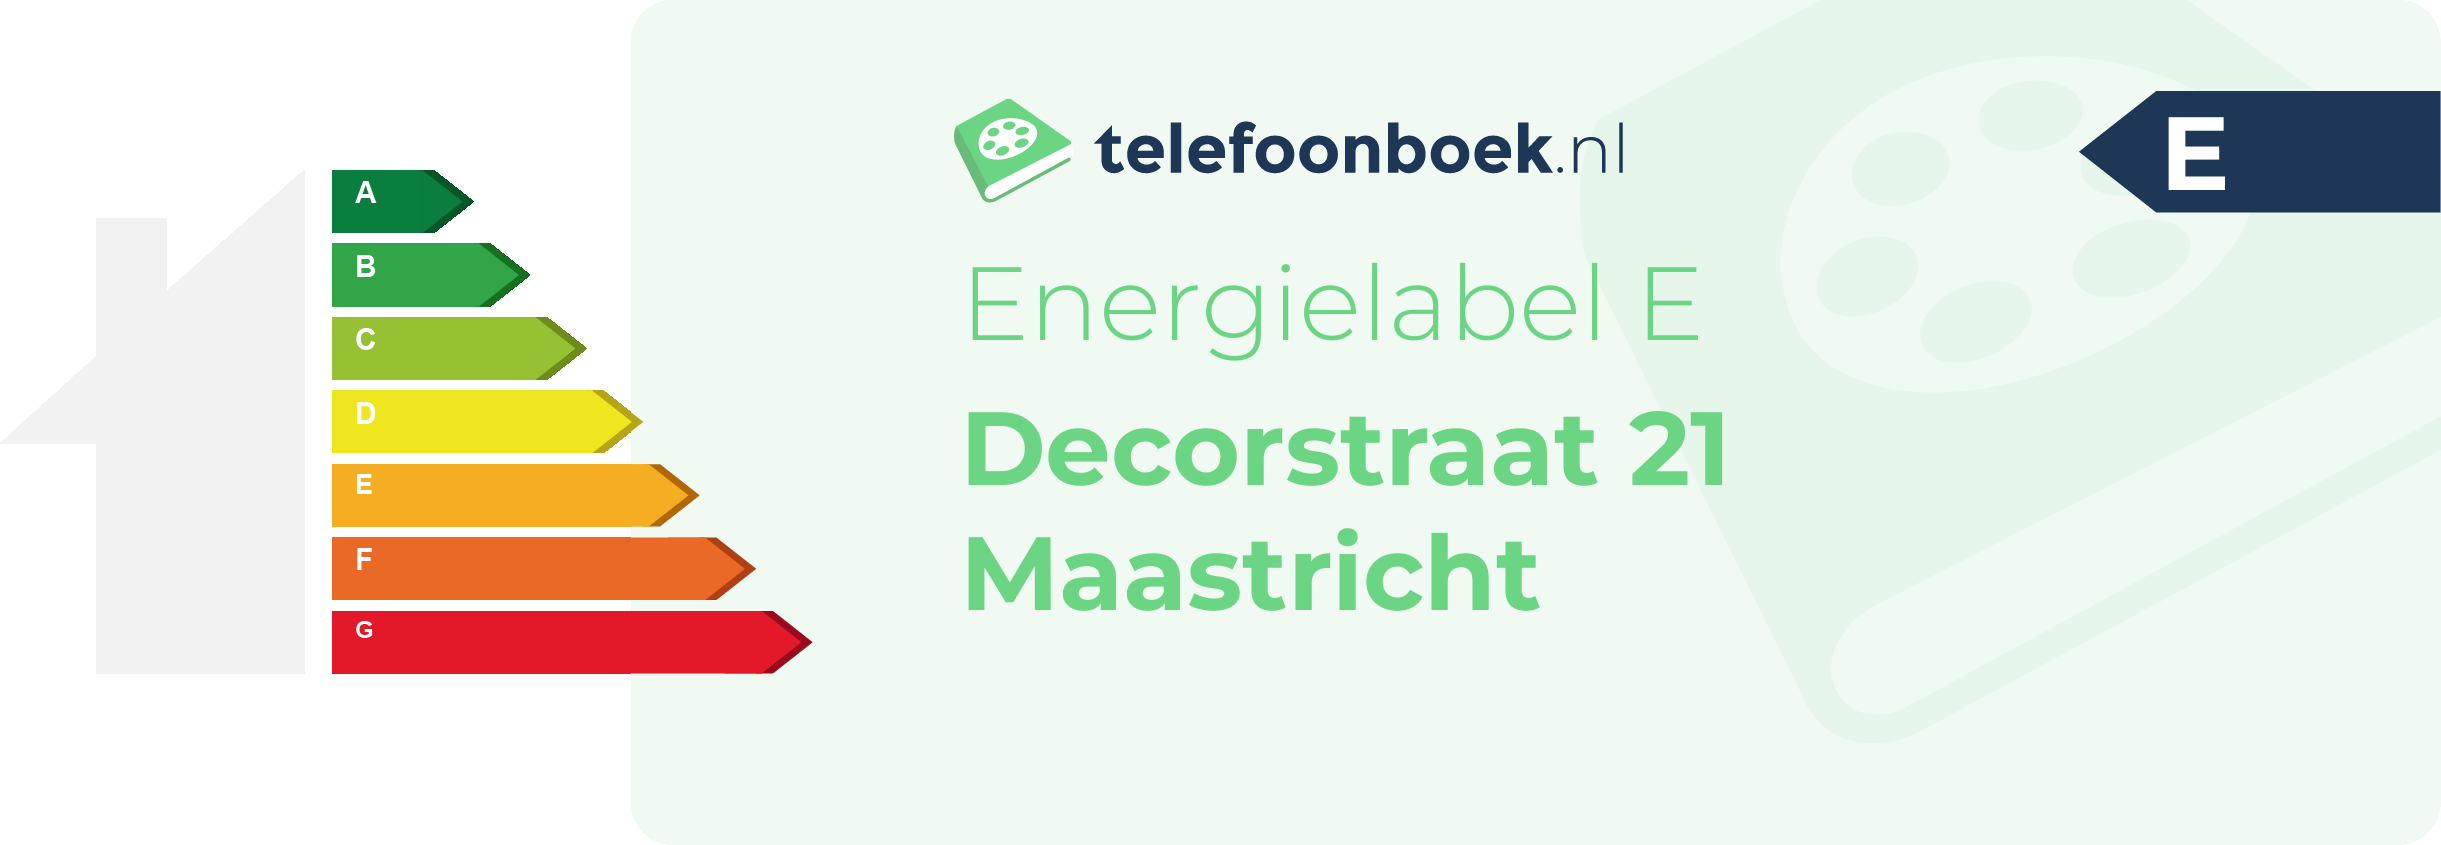 Energielabel Decorstraat 21 Maastricht